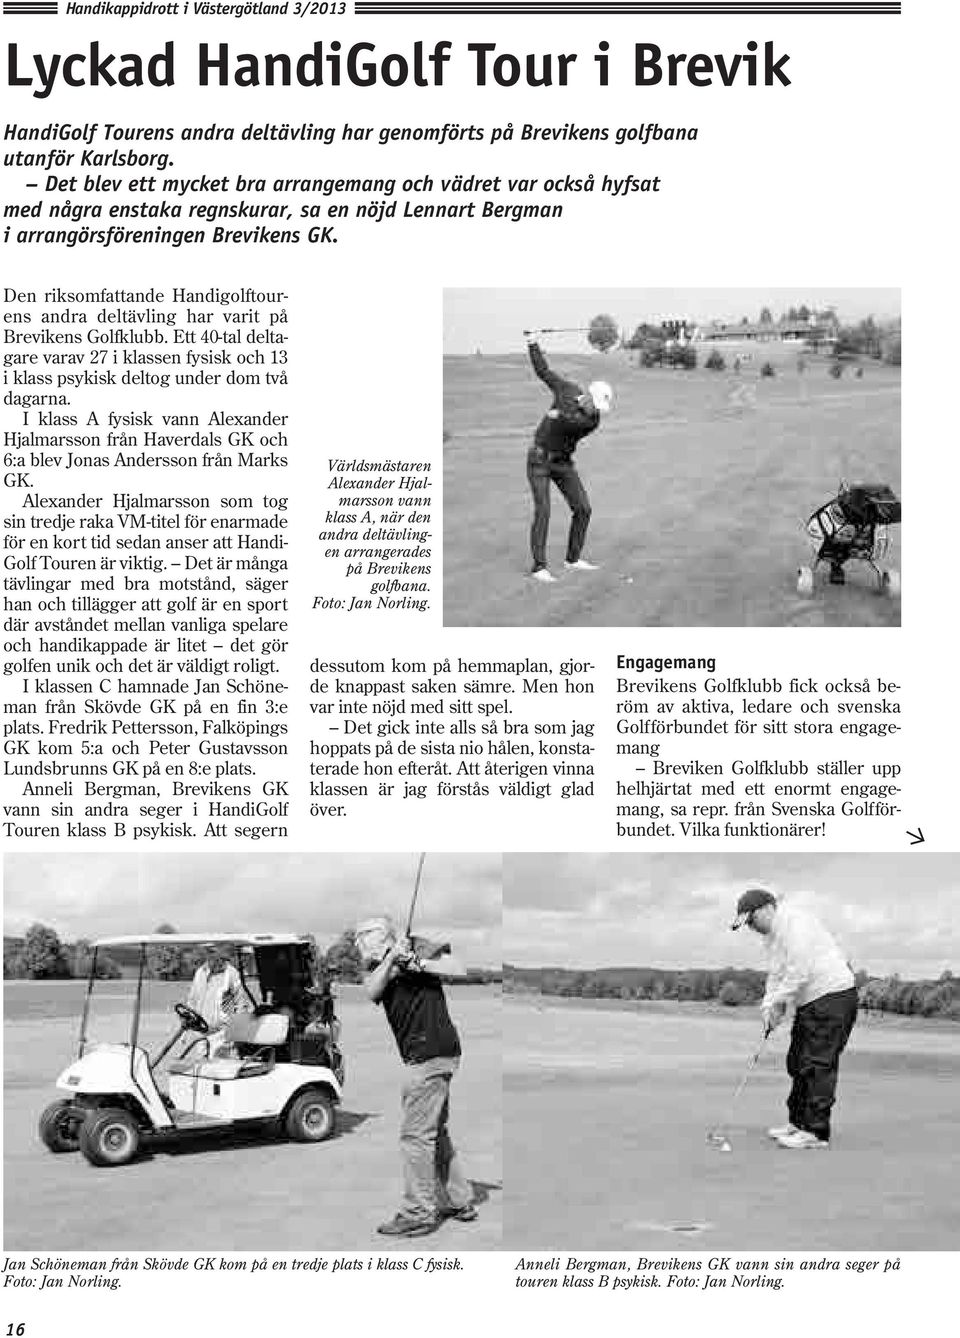 Den riksomfattande Handigolftourens andra deltävling har varit på Brevikens Golfklubb. Ett 40-tal deltagare varav 27 i klassen fysisk och 13 i klass psykisk deltog under dom två dagarna.